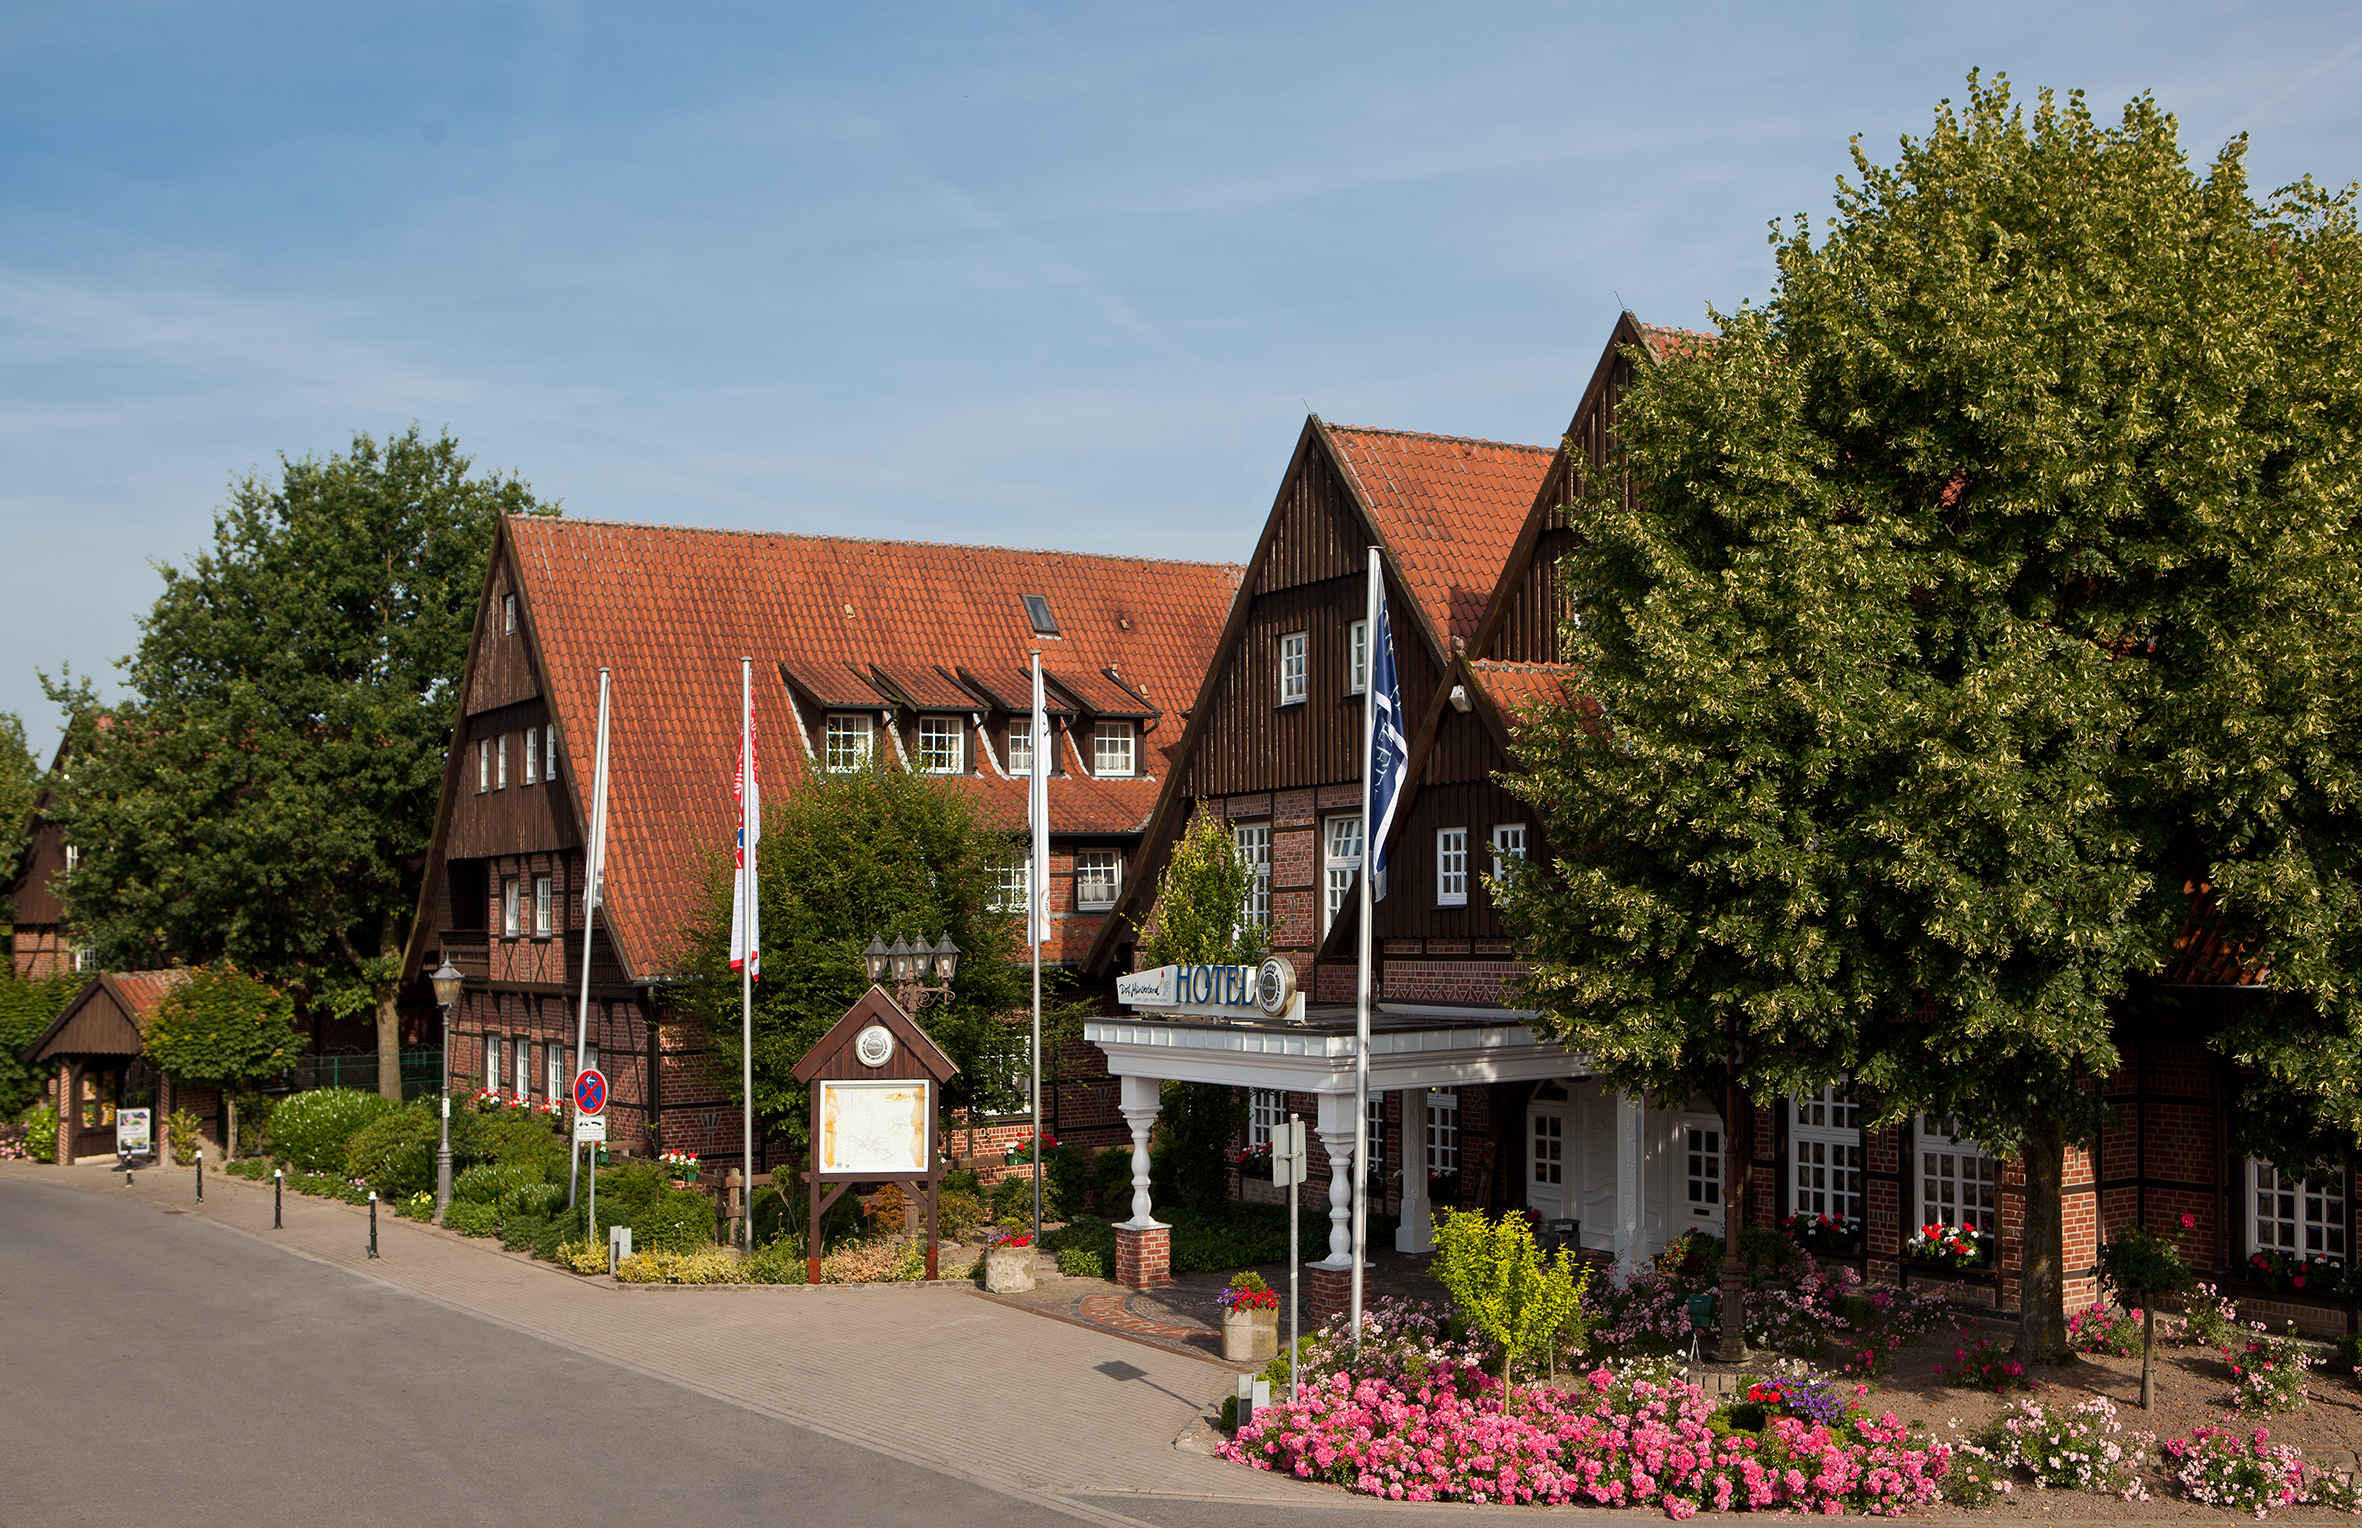 Welcome Hotel Dorf Münsterland, Legden.
